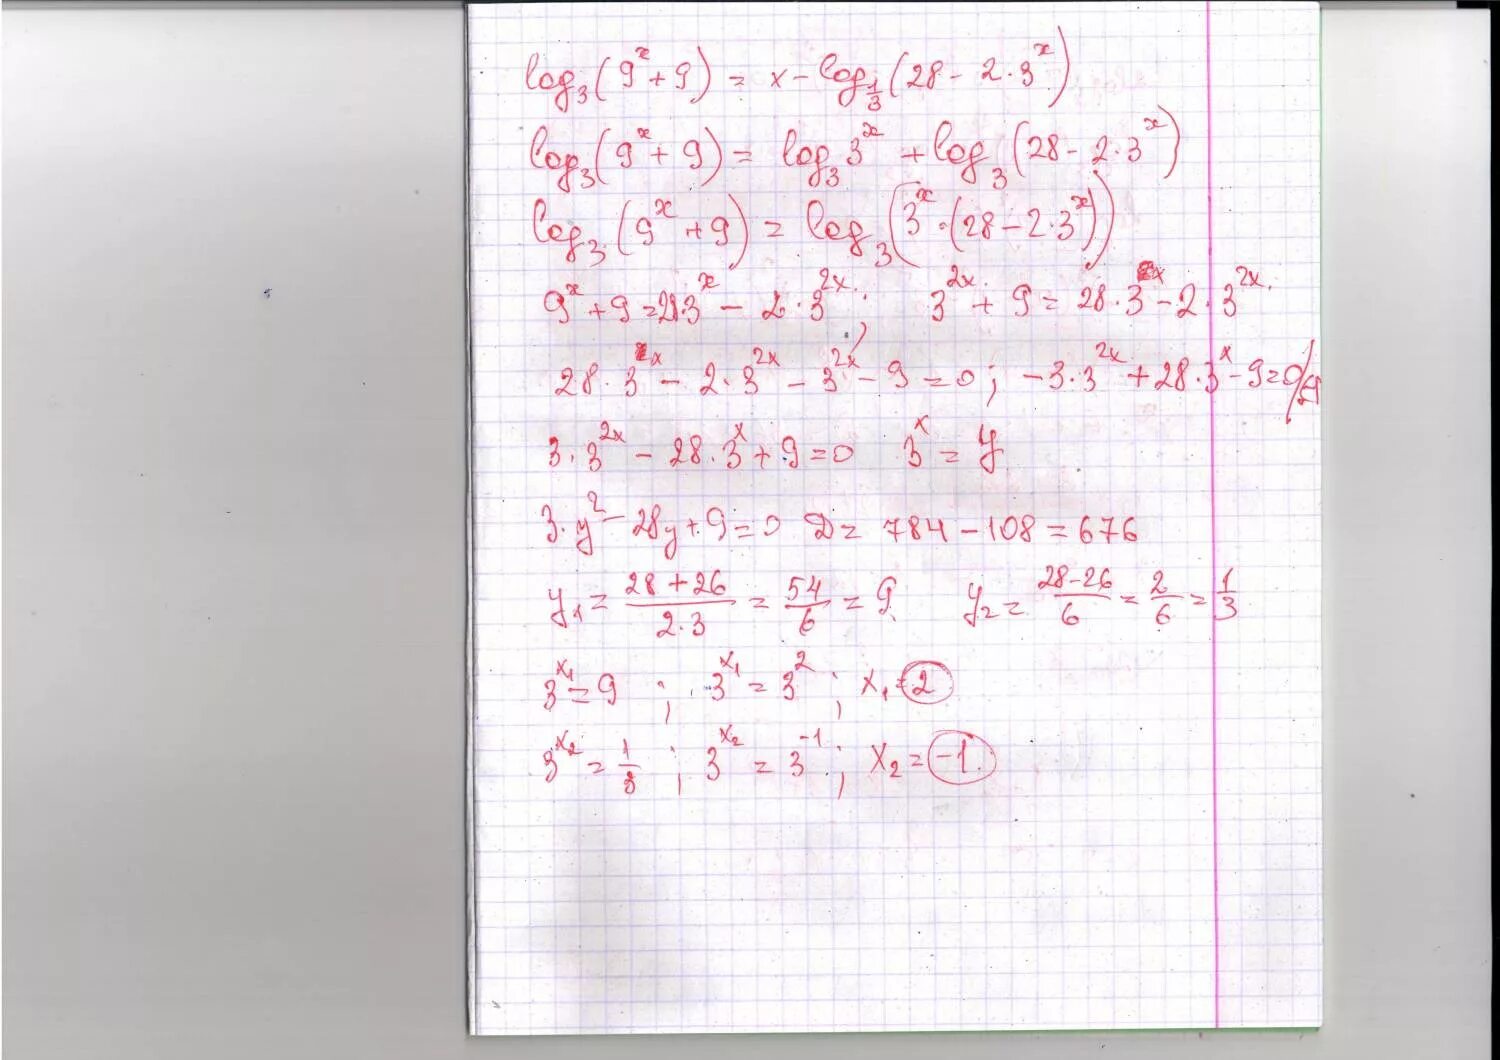 Log 2 3 9x. Найти оригинал изображения p^2/(p+3)^2. −9g⋅(− 3 1 )⋅2 6 1 t. L 20lg p/p0. Log6 (3x-5) < -3.